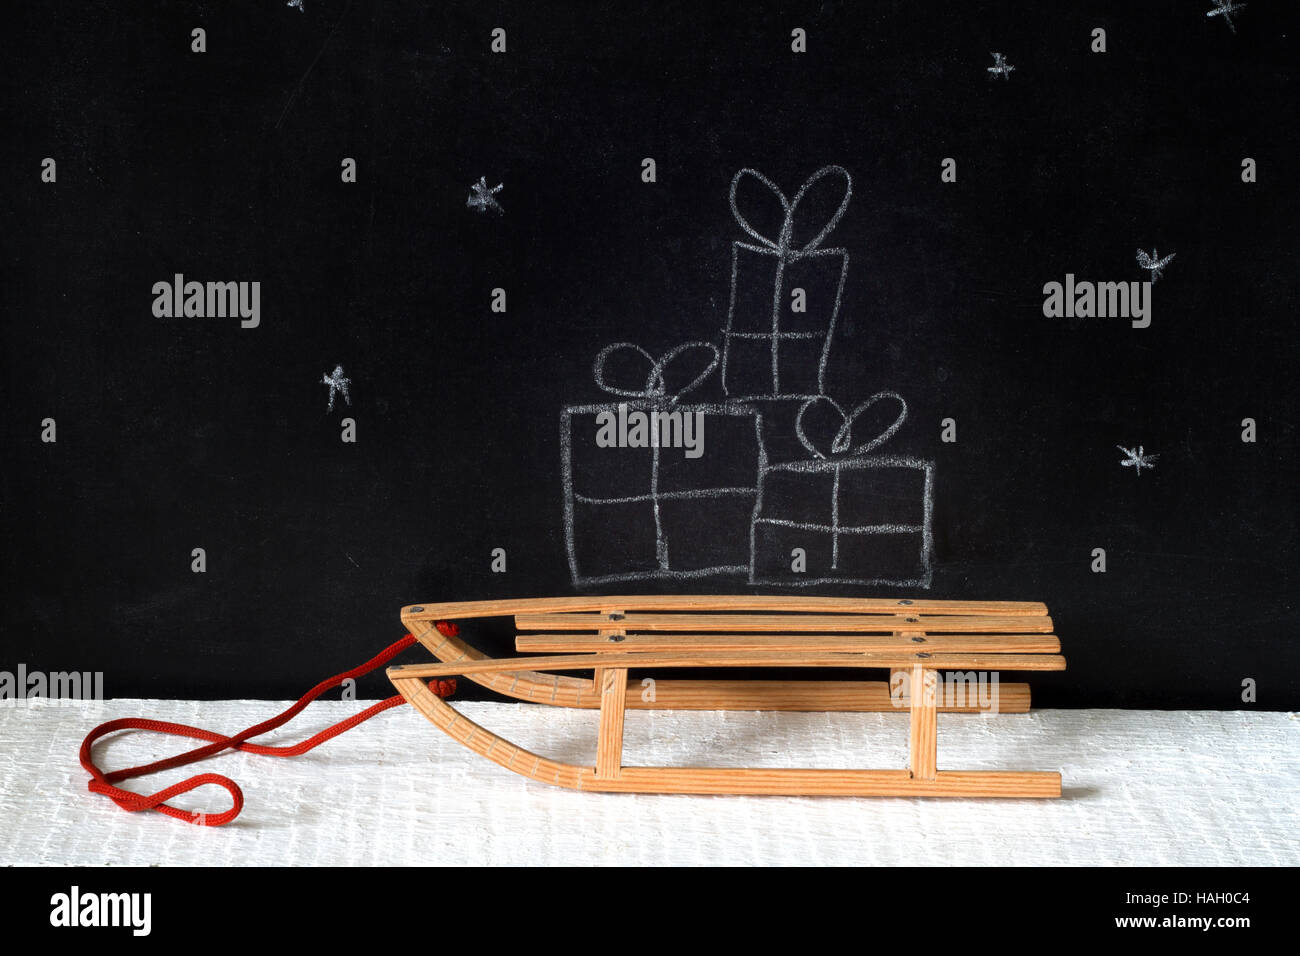 Weihnachtsgeschenke auf dem Schlitten Zusammenfassung auf Blackboard-Konzept Stockfoto